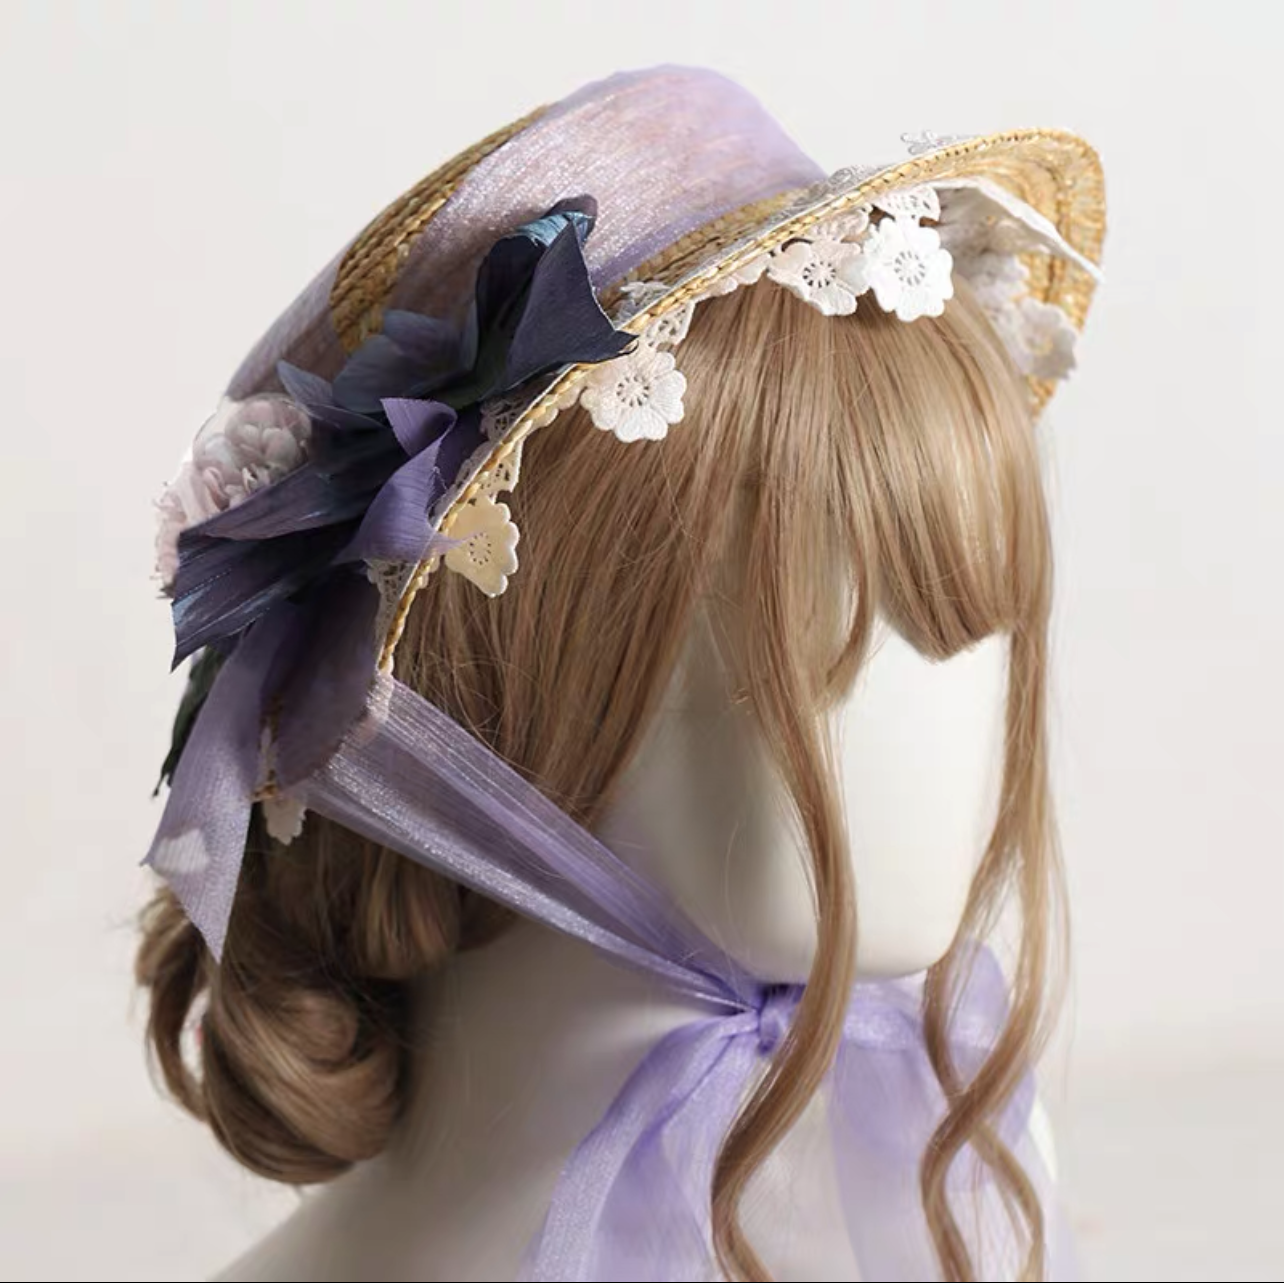 Lolita Vintage Flower Straw Hat